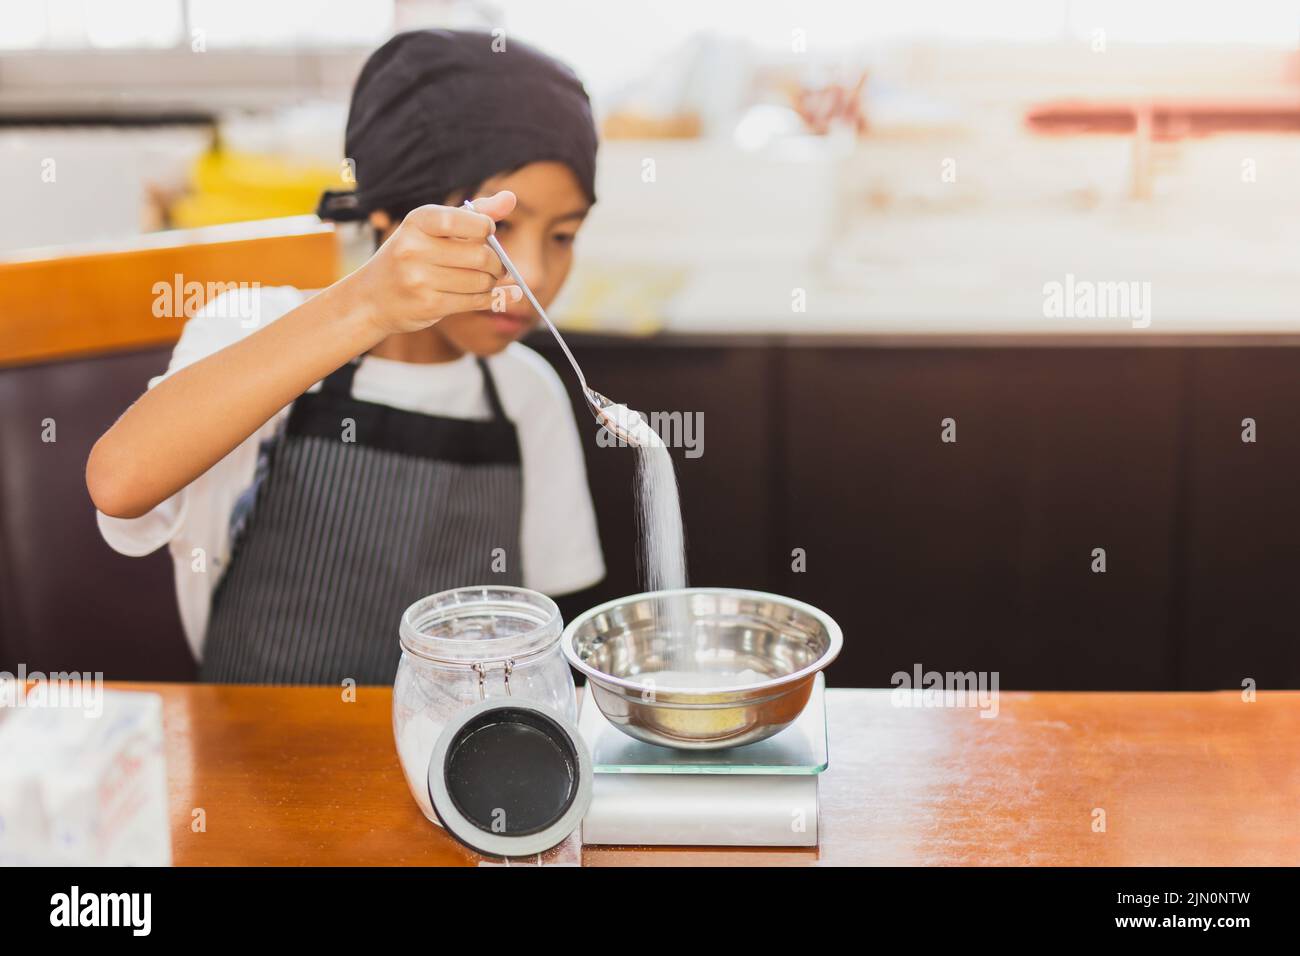 Kleiner Junge, der Zutat zum Backen in der Küche misst. Stockfoto